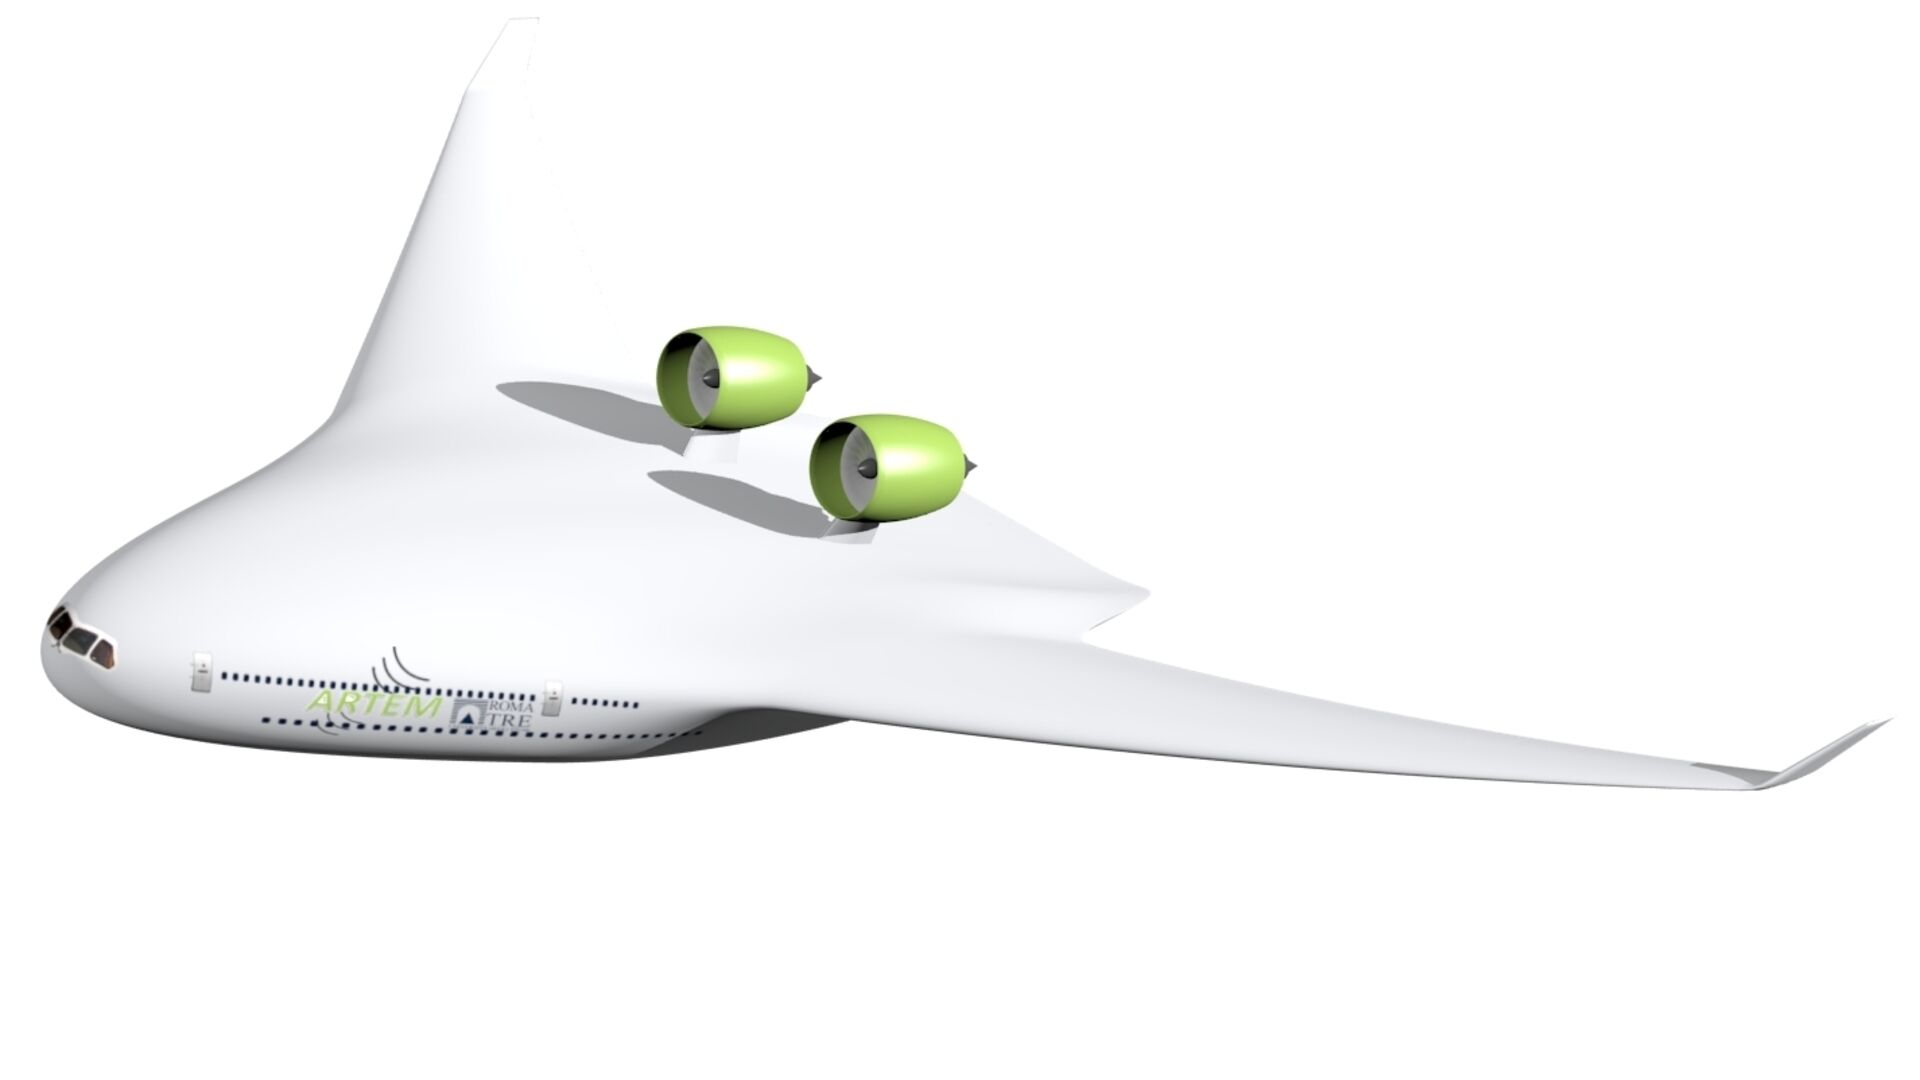 Hrup: konfiguracije letal 2035 in 2050, akronim BWB, zasnovane v okviru projekta Evropske unije ARTEM